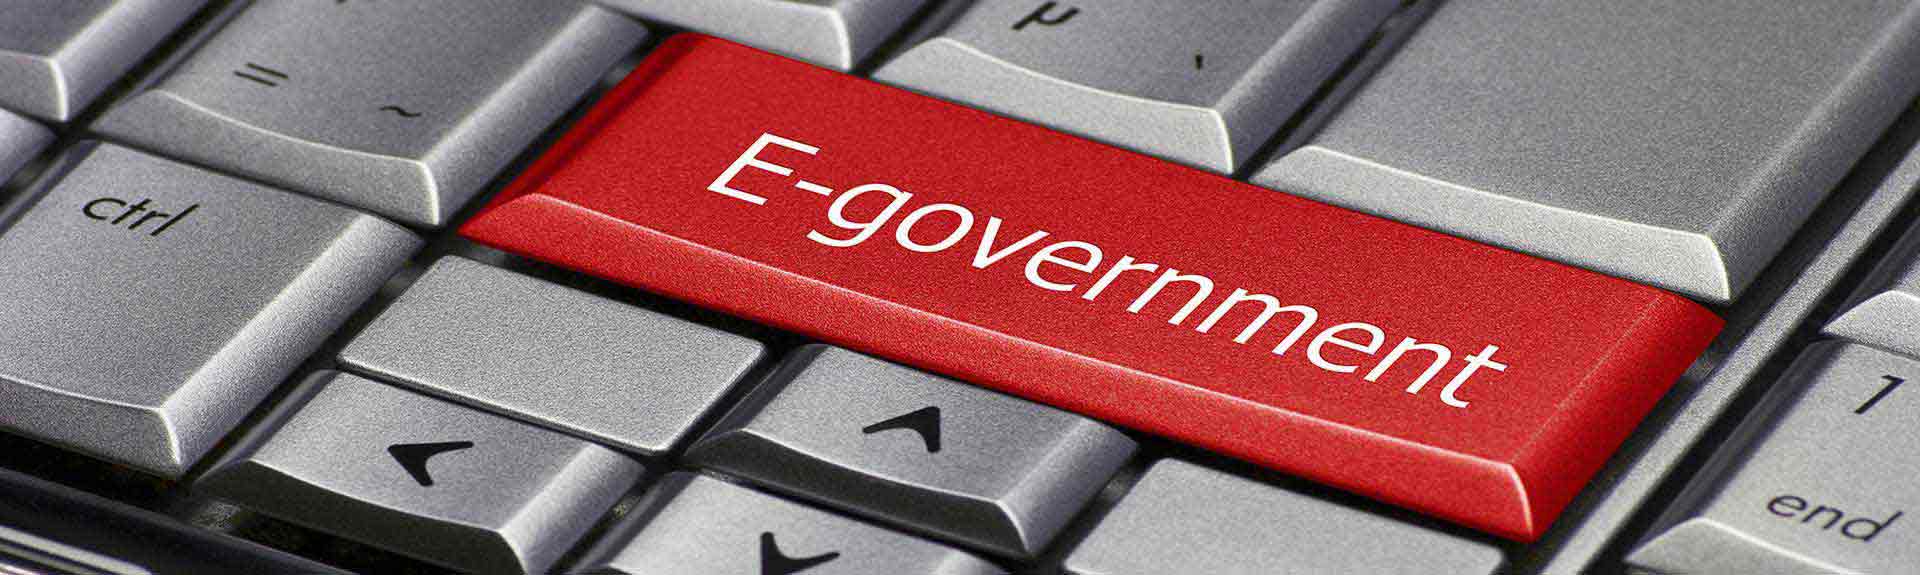 e-government.jpg